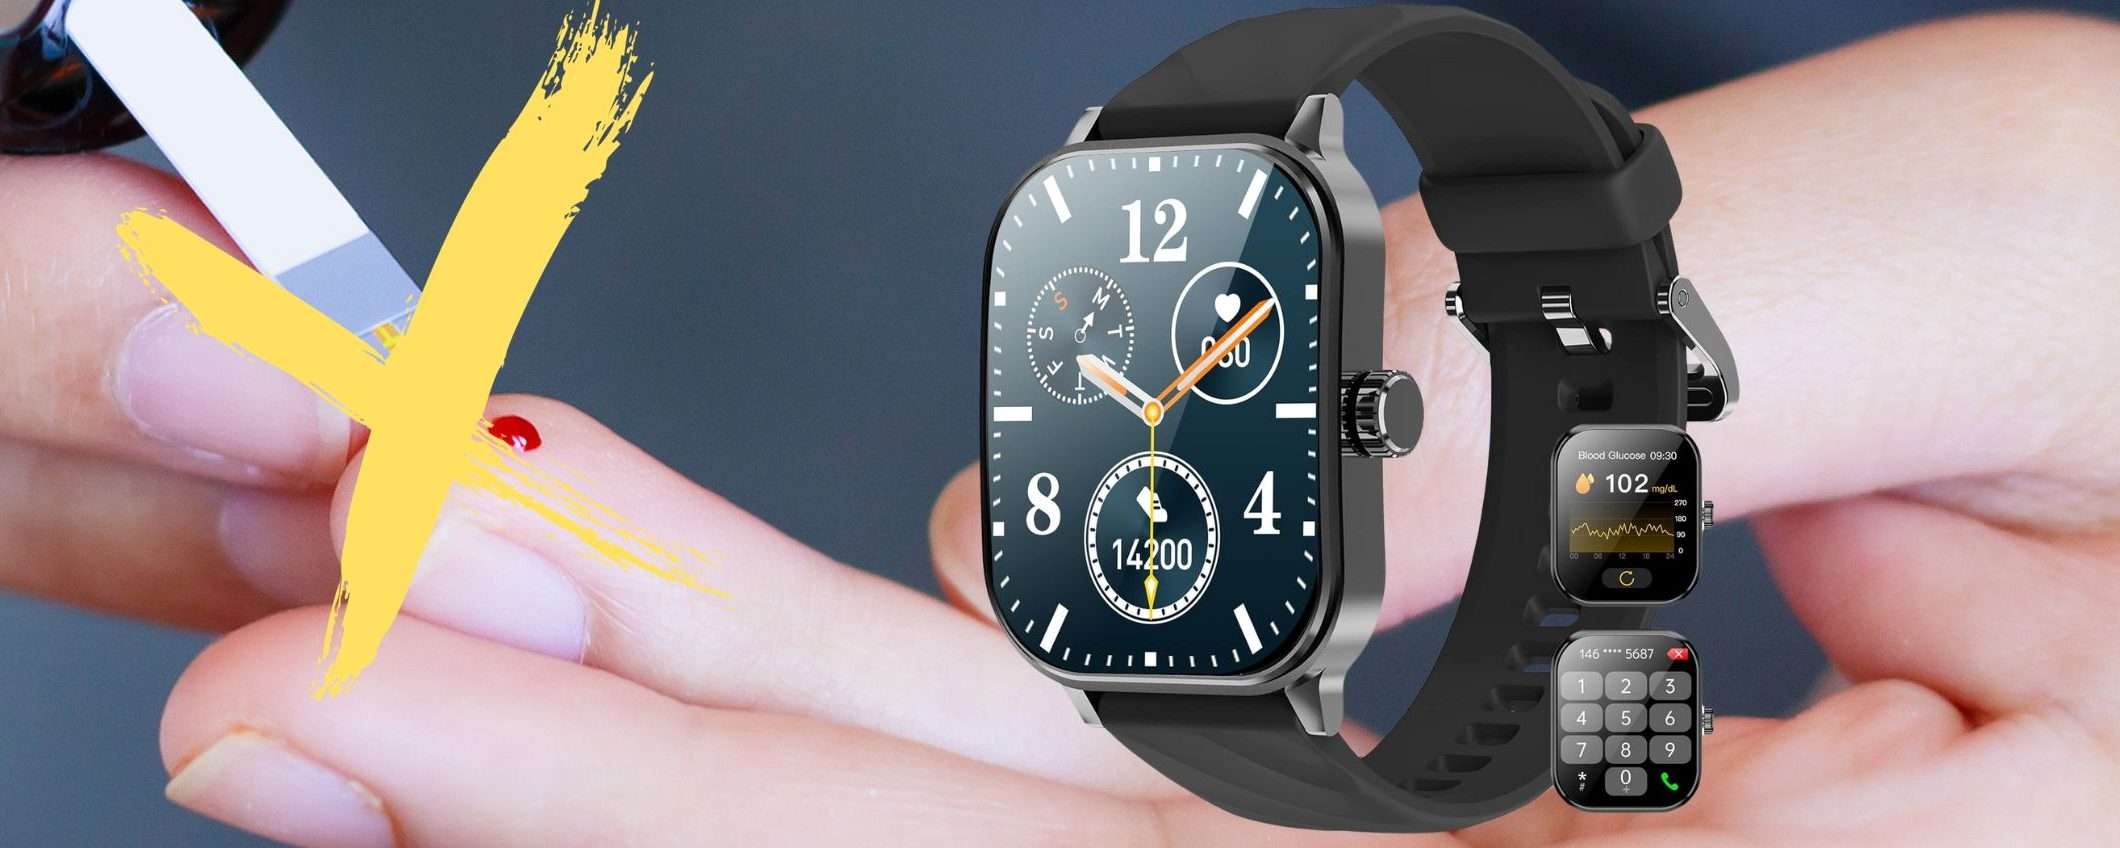 Solo 36€ per lo smartwatch che misura GLICEMIA, temperatura e non solo